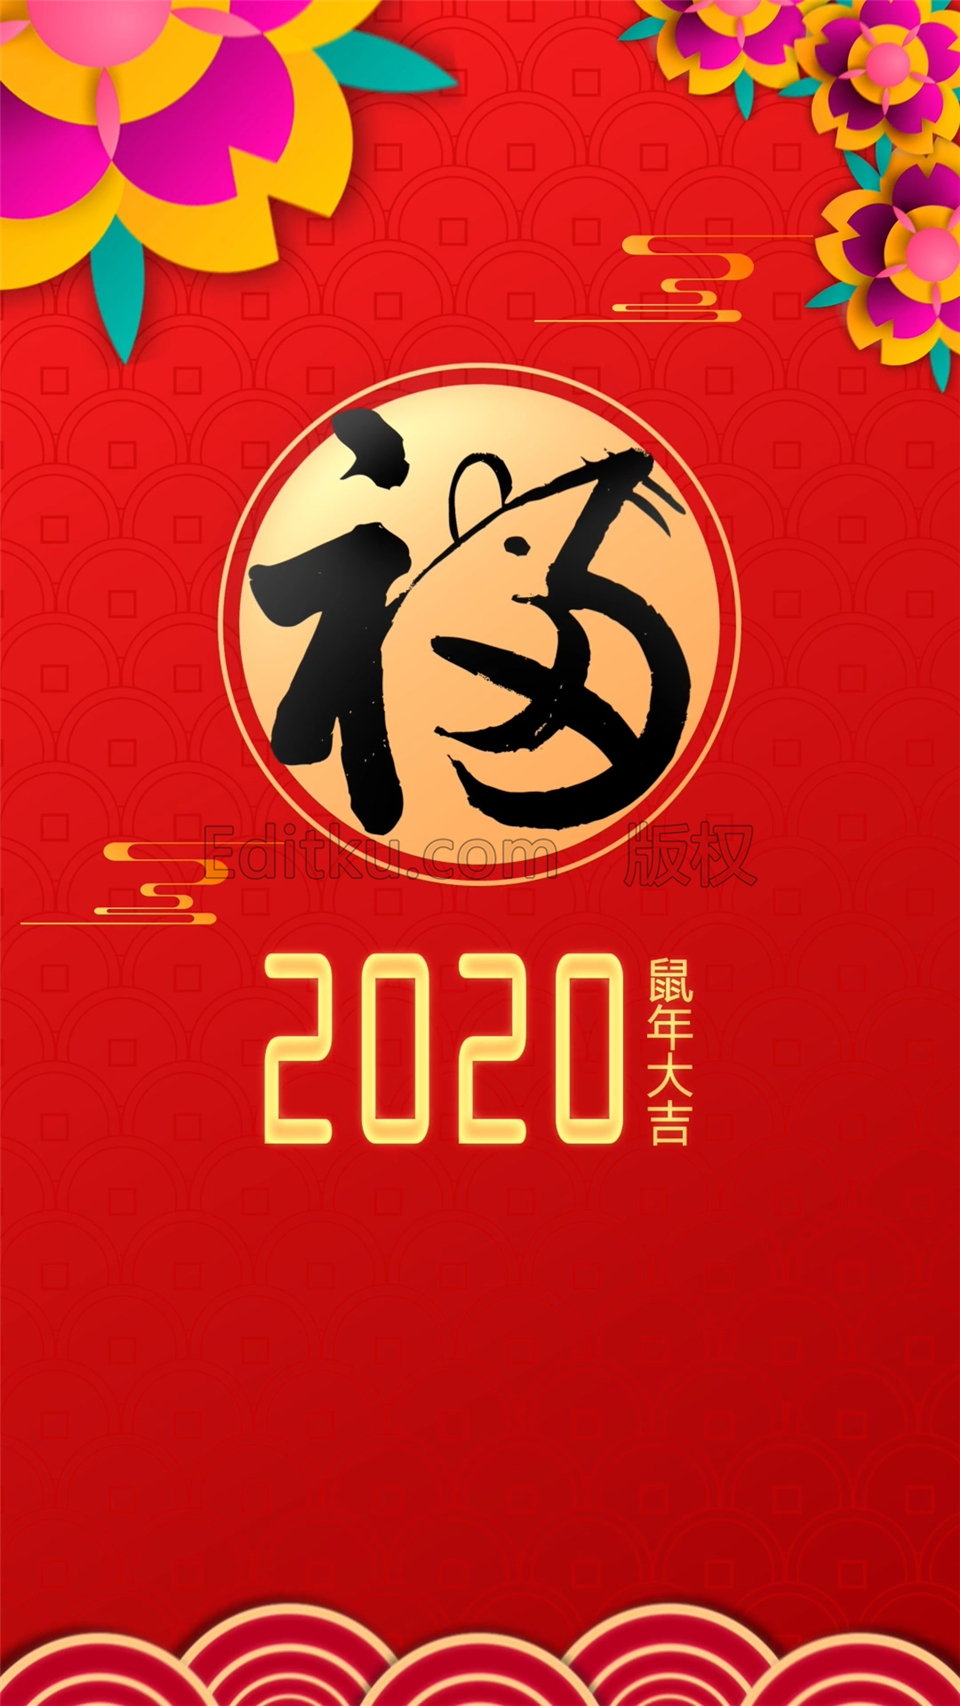 原创AE模板下载2020年福鼠新年片头小视频制作拜年动态贺卡动画_第2张图片_AE模板库